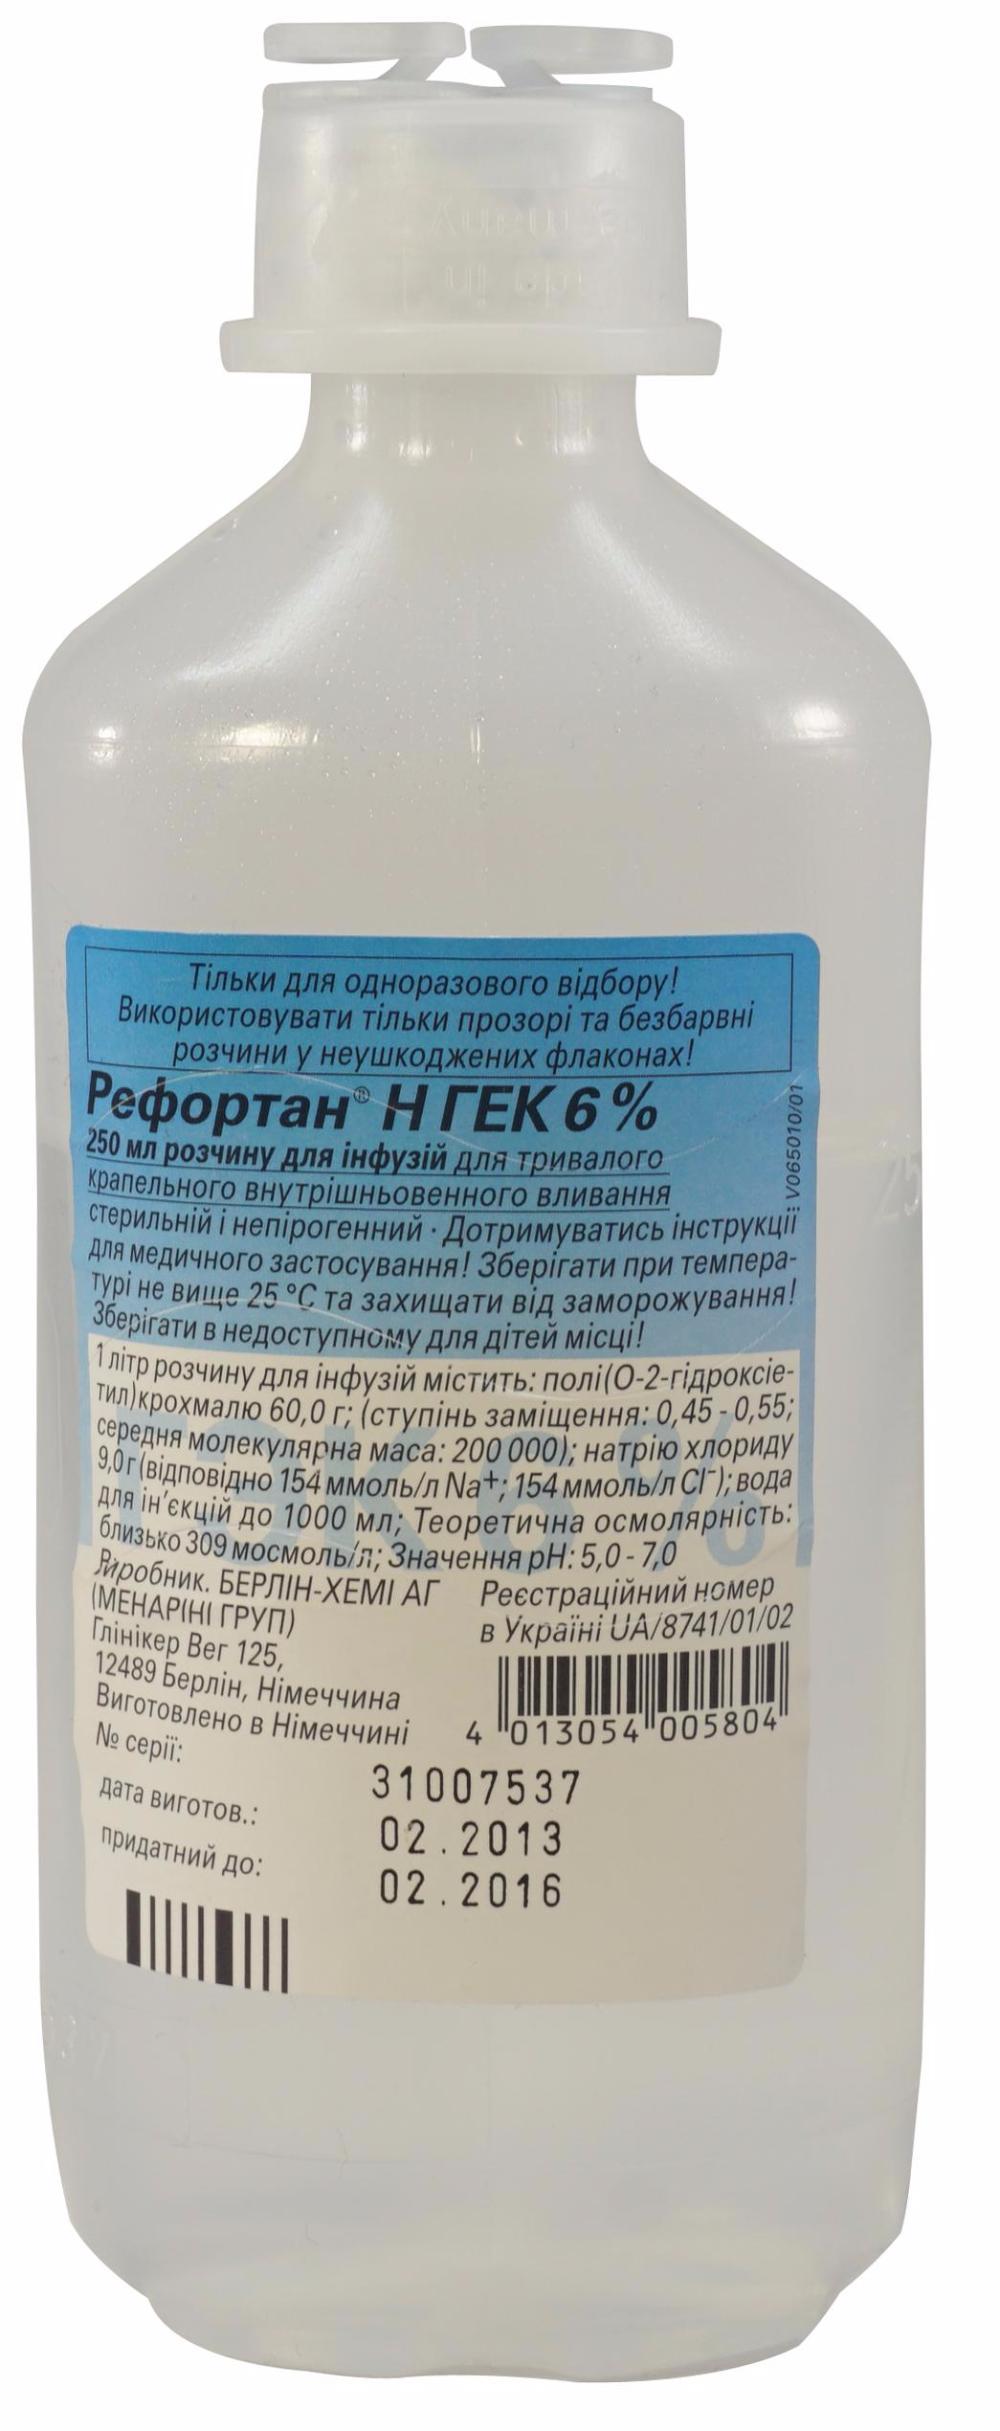 5173 ГЕК-ІНФУЗІЯ 10 % - Hydroxyethylstarch